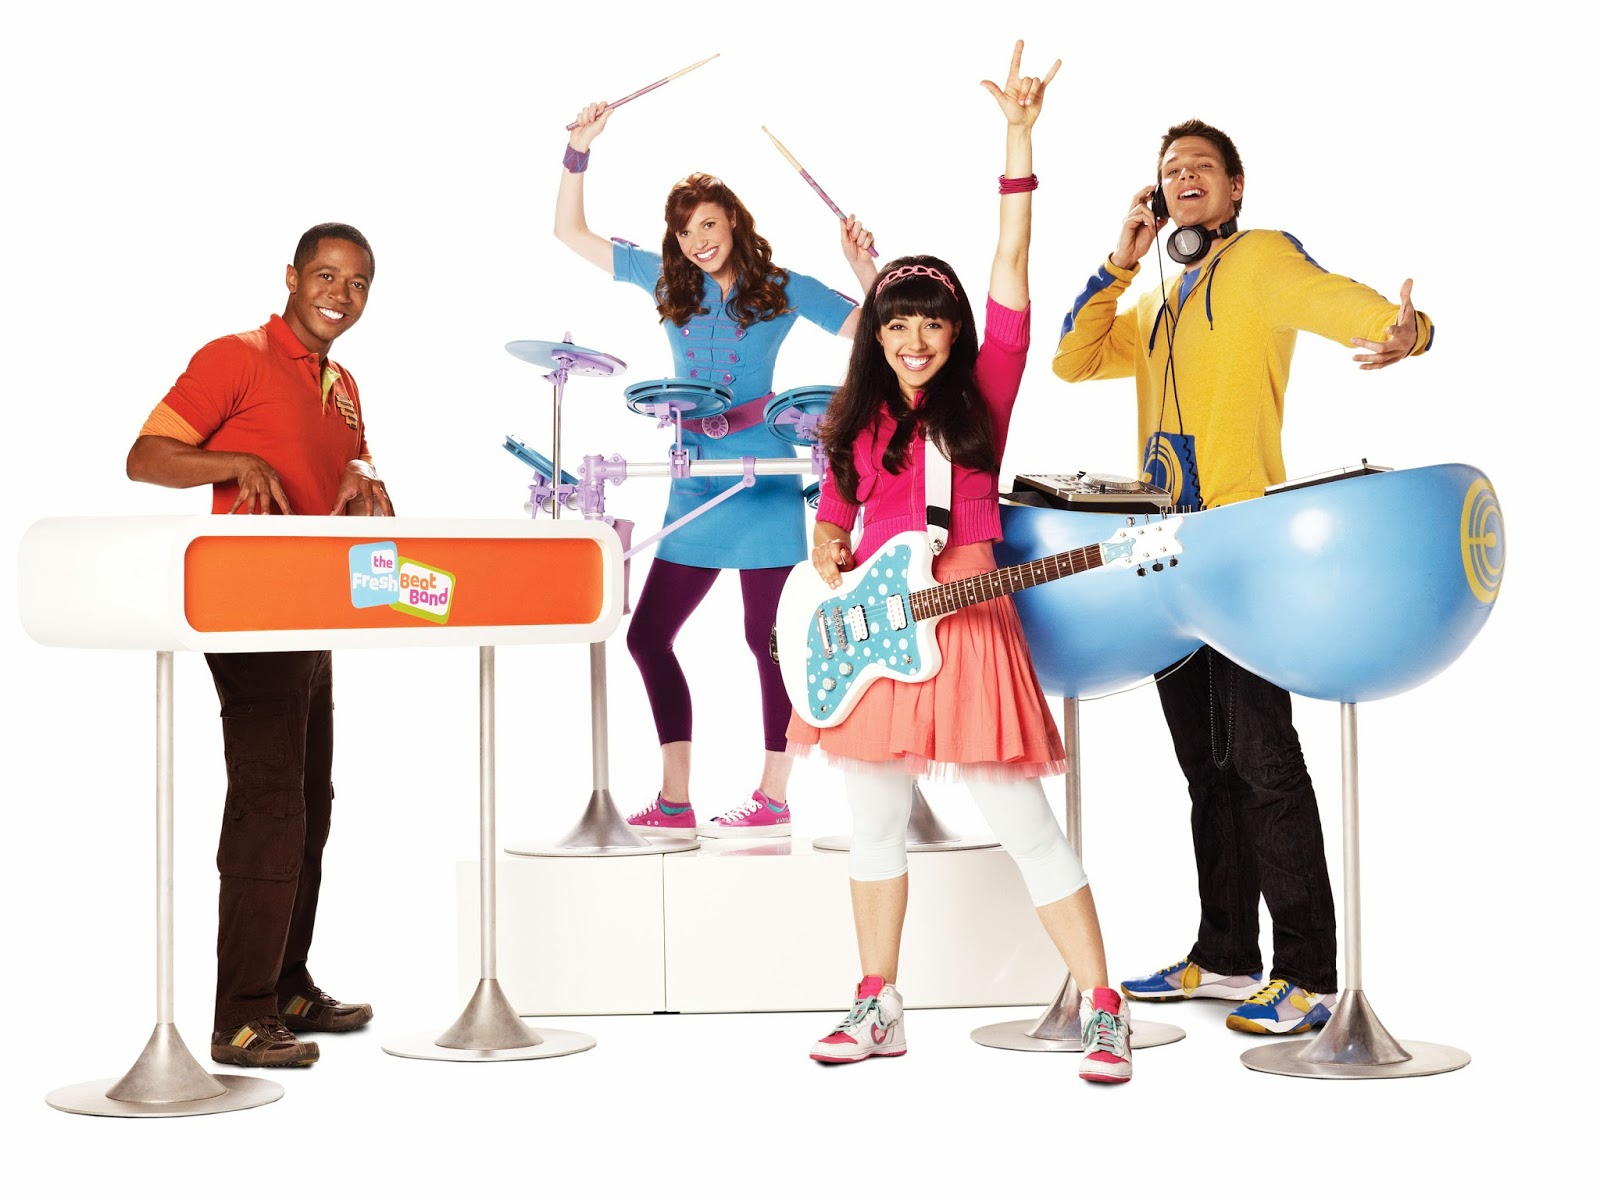 Nickelodeon's The Fresh Beat Band. 